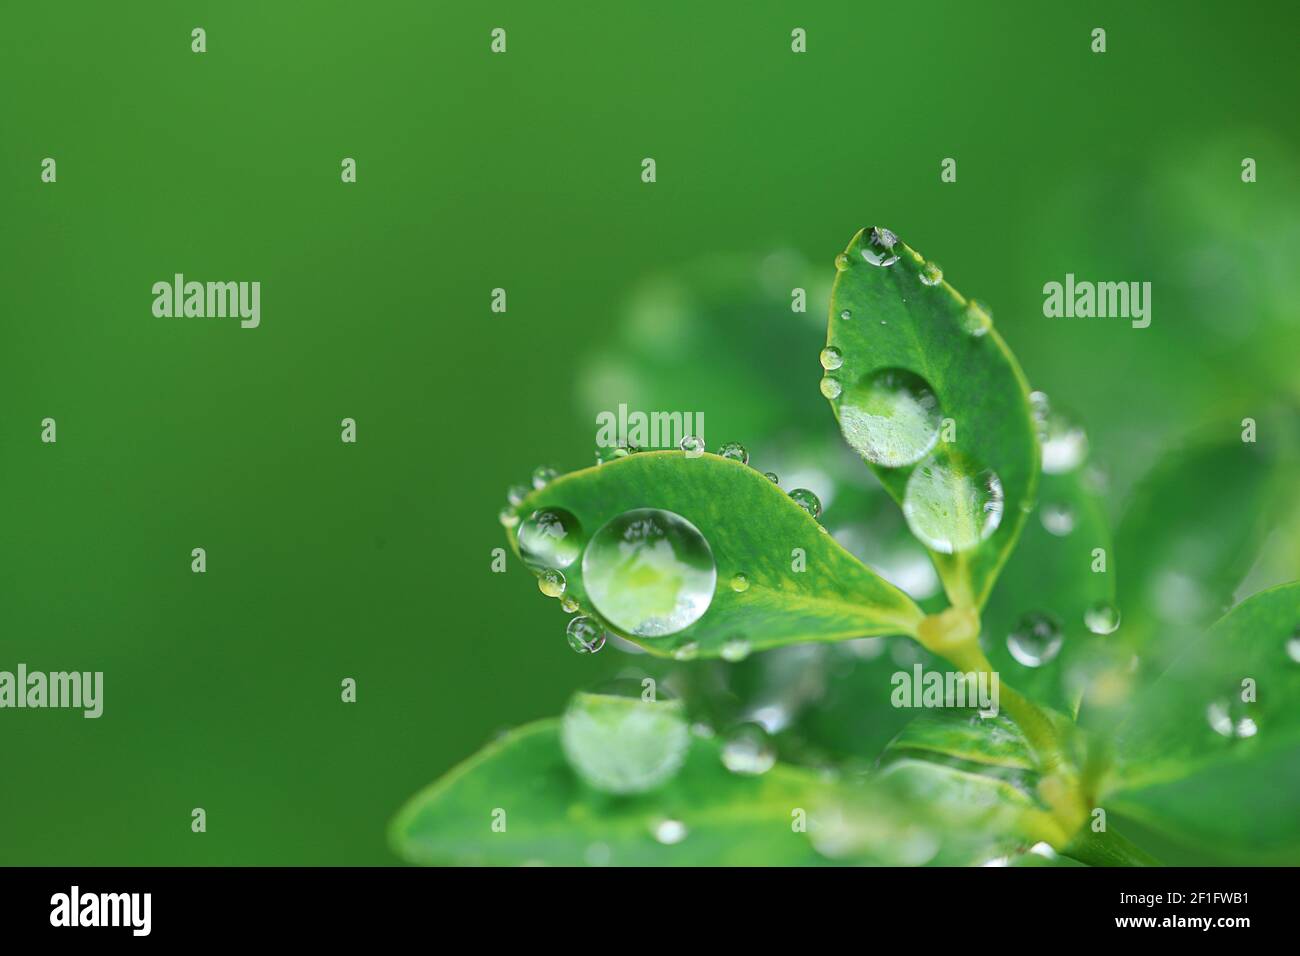 Día de la Tierra. Concepto ecológico. Hojas verdes con gotas de agua sobre fondo verde brillante borroso.hermoso fondo de la naturaleza.plantas verdes sobre verde Foto de stock